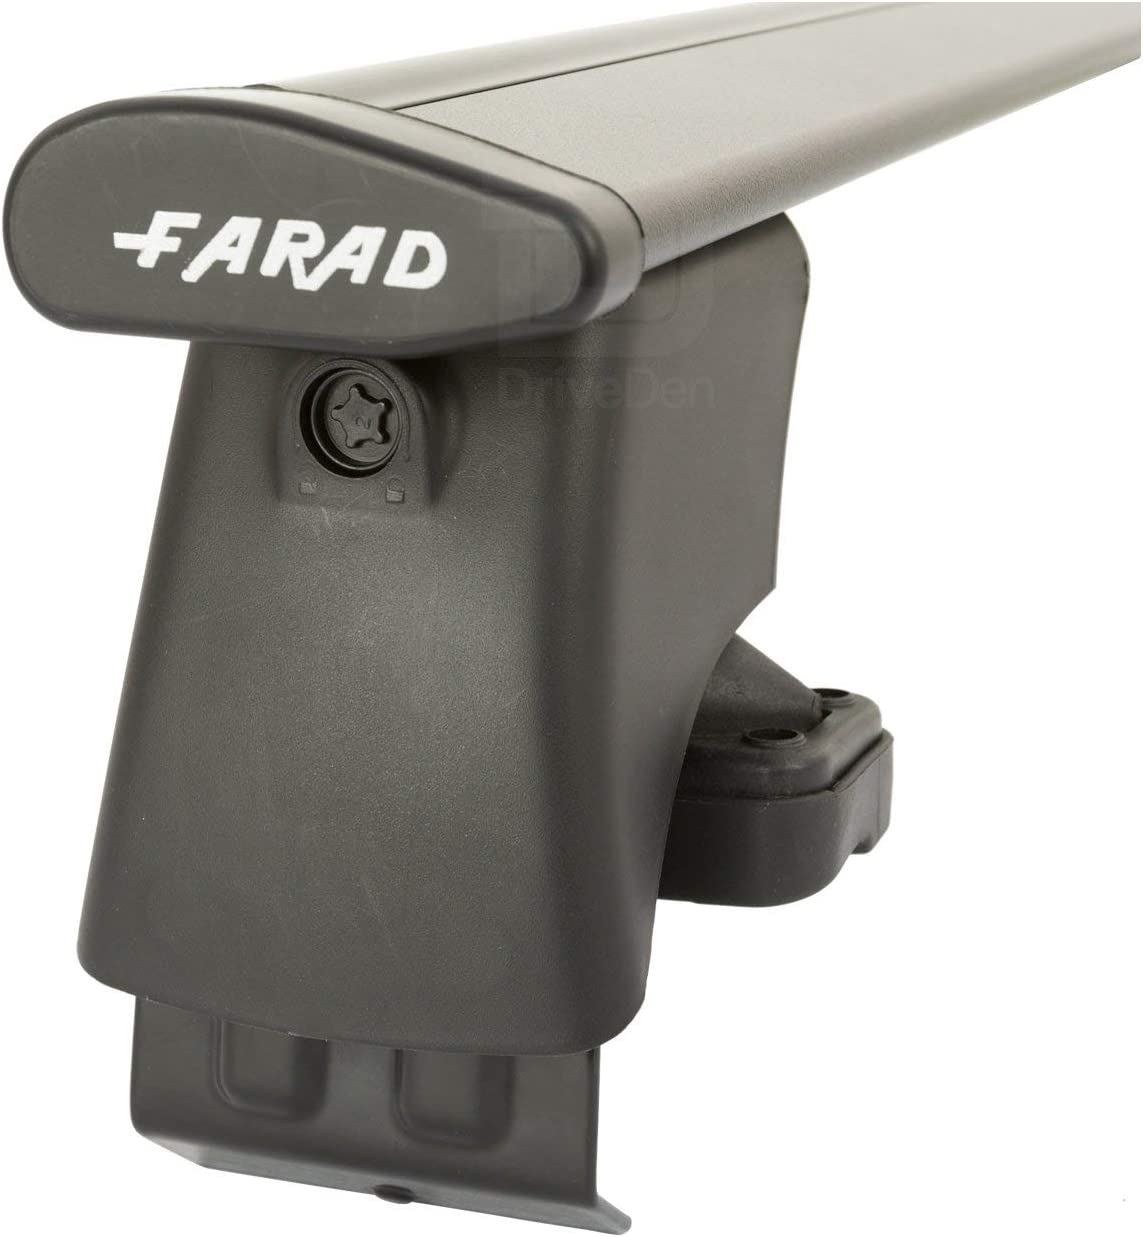 FARAD-Kit H2 per barre portatutto - Audi A3 Sportback 2013-2020 (senza corrimano)